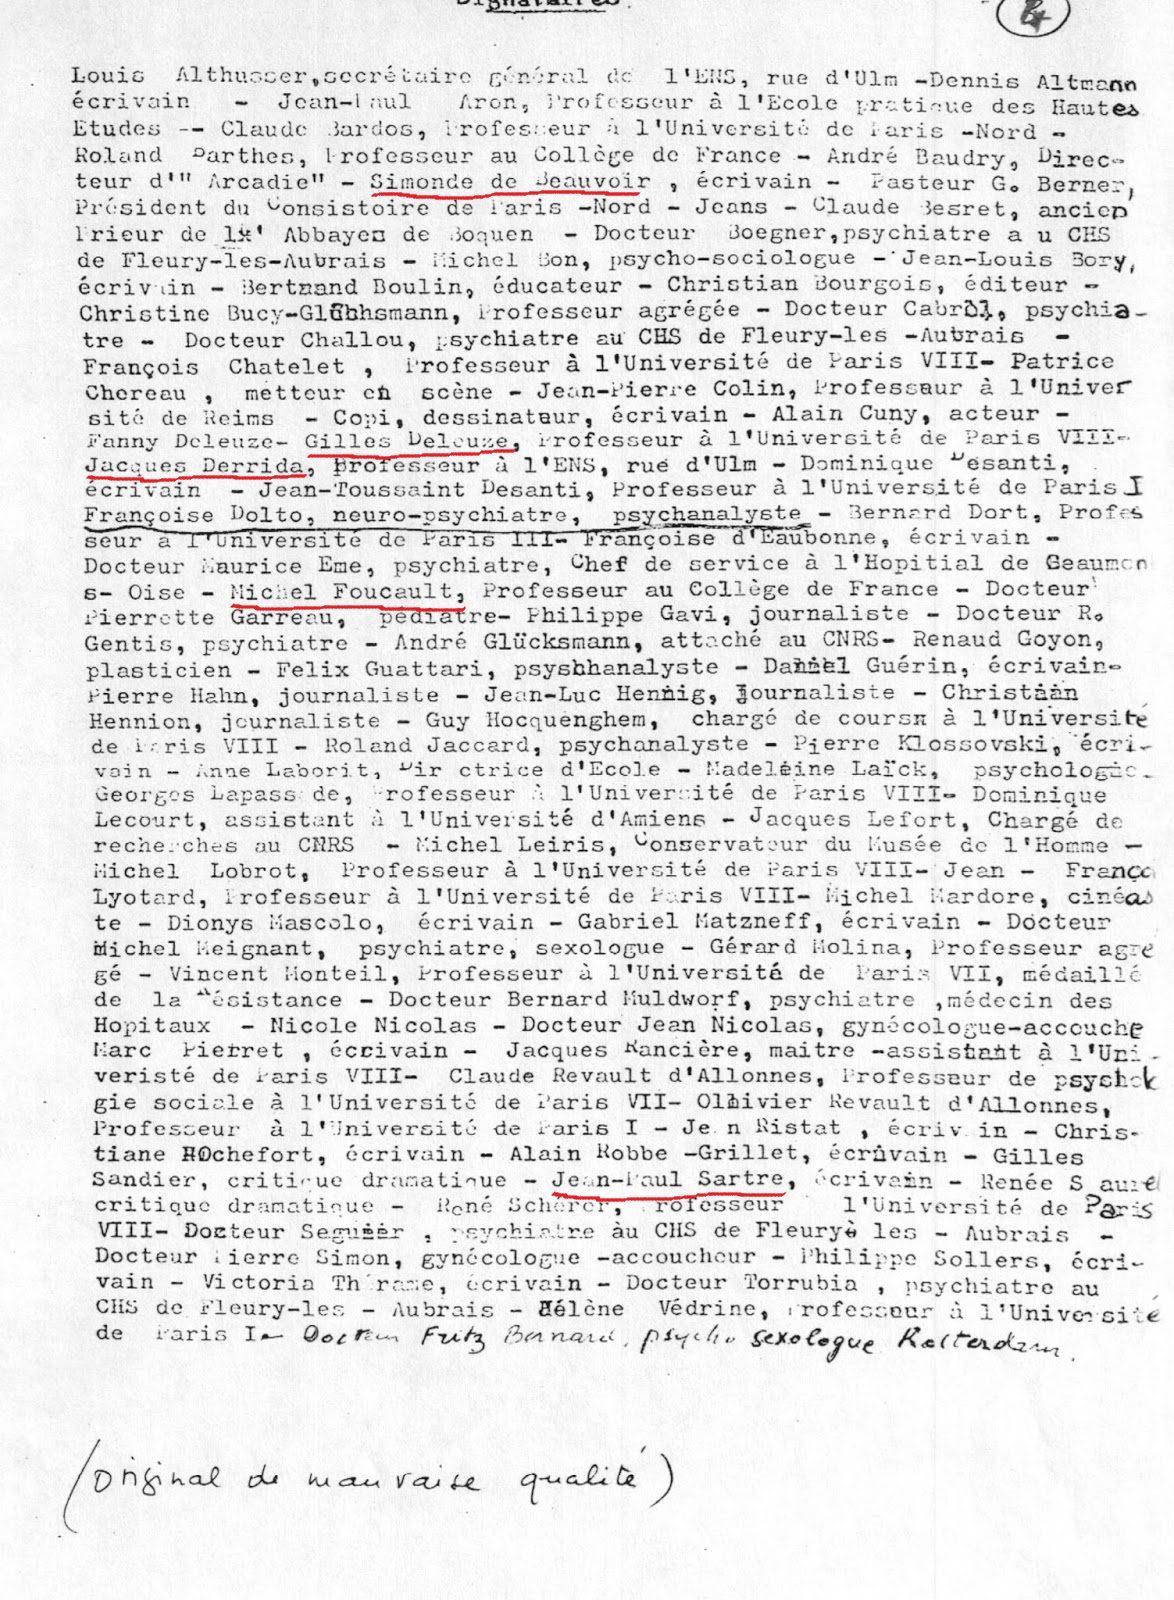 Kopie van het originele manifest uit 1977 pedofilie